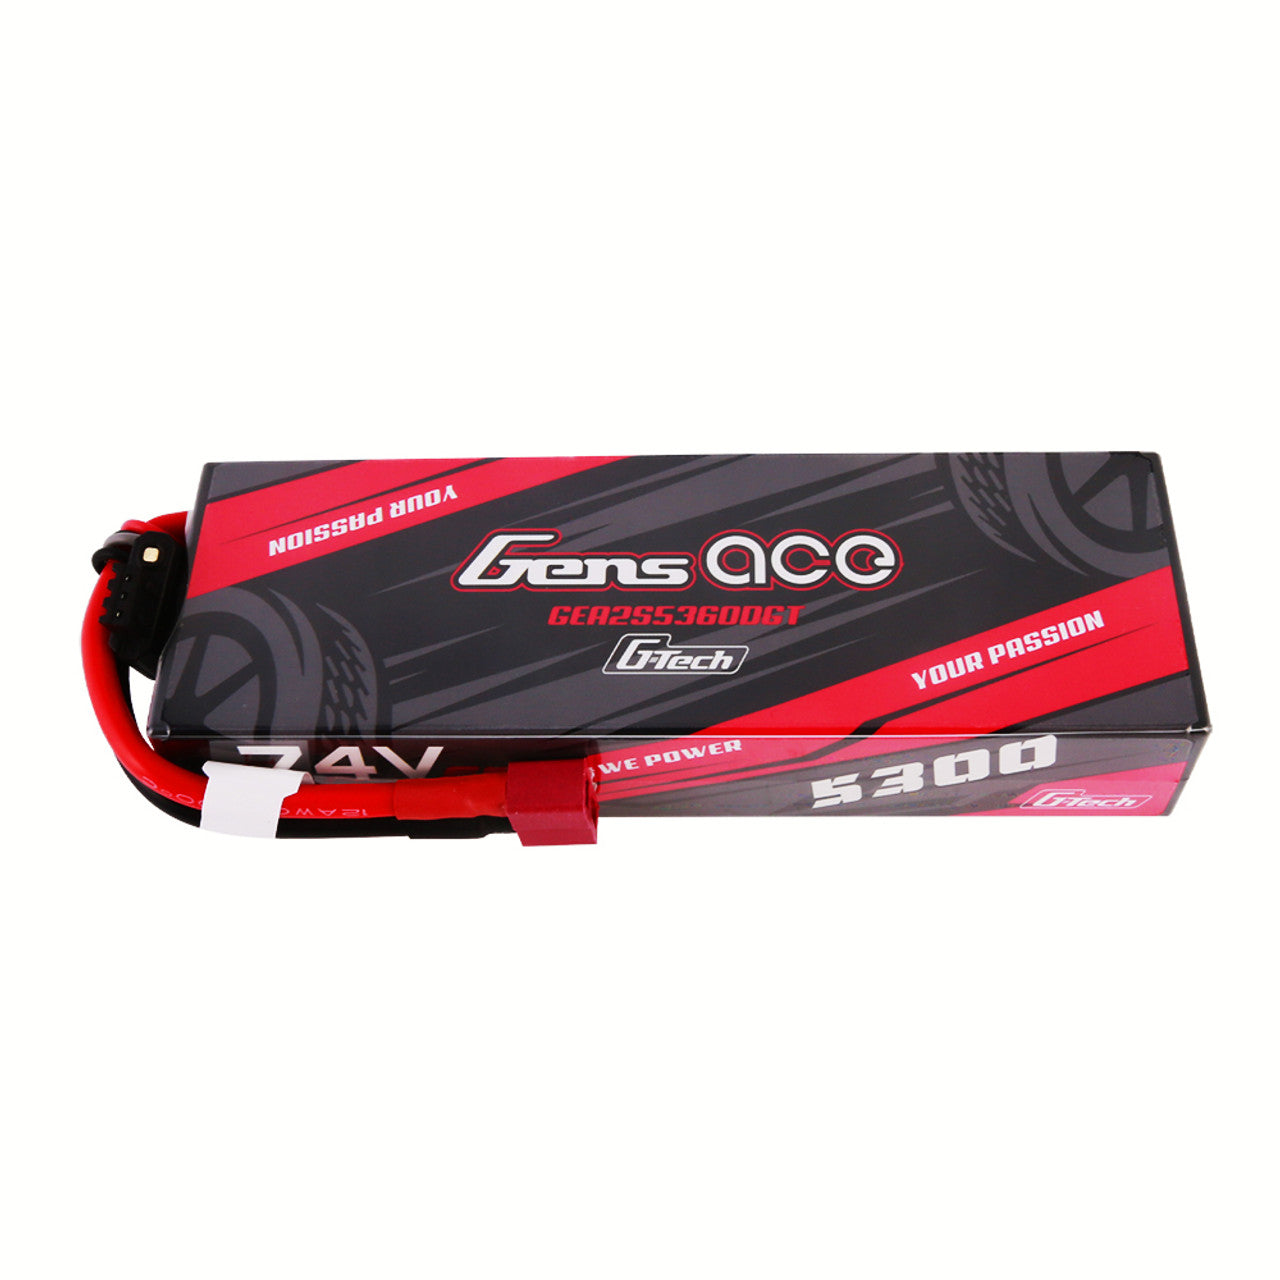 GEA2S5360DGT Gens Ace g-tech 5300 mAh 7.4 V 60C 2S1P batterie Lipo HardCase 21 # avec prise Deans